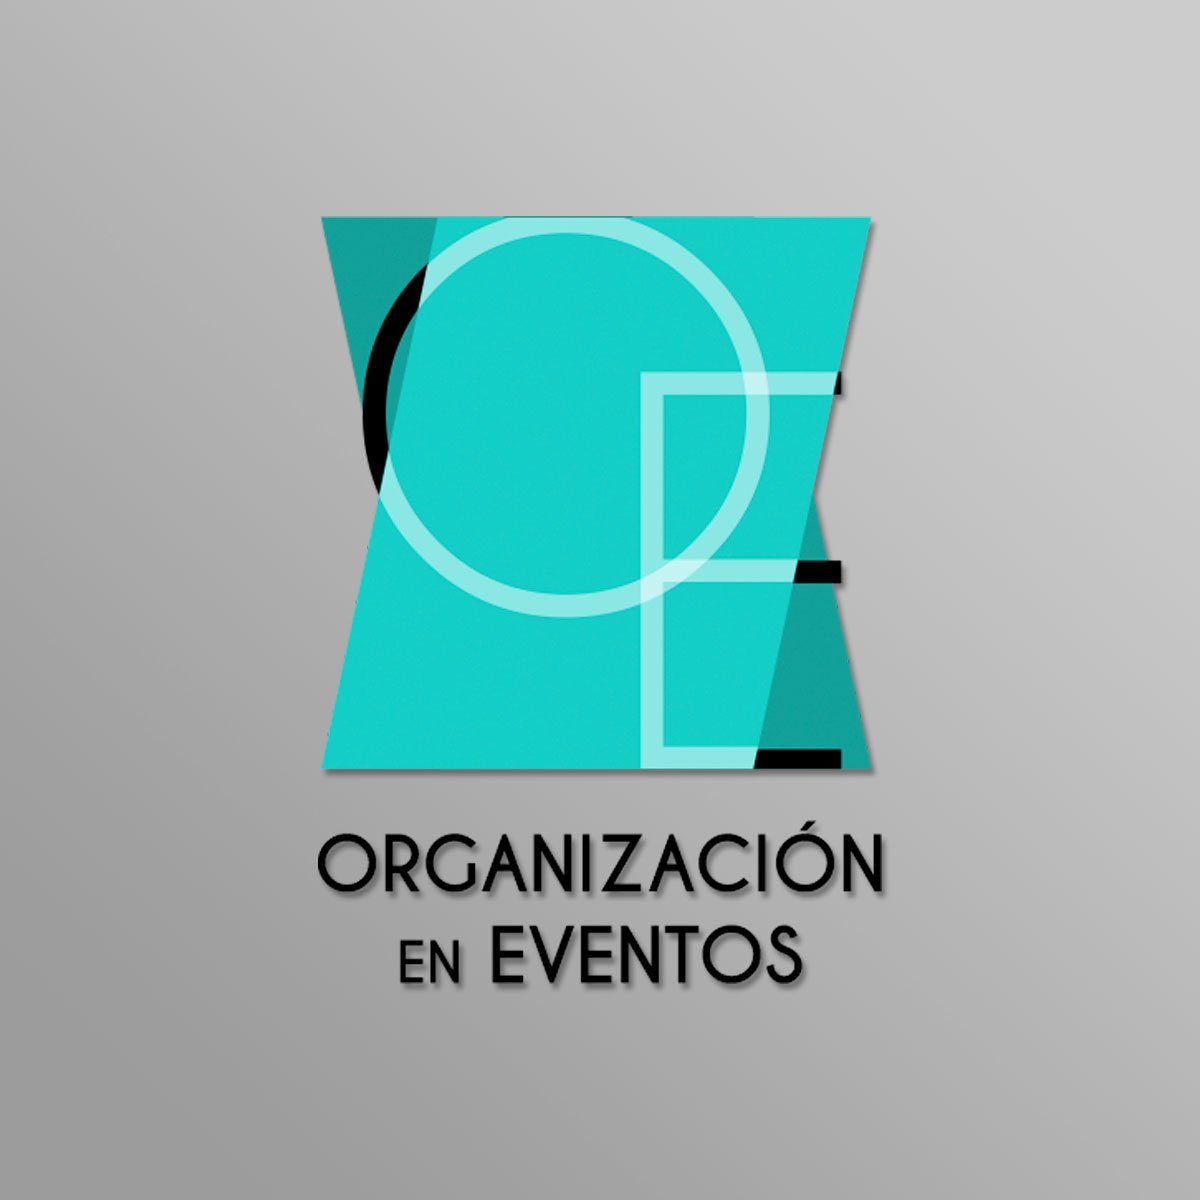 SPM – Organización de Eventos